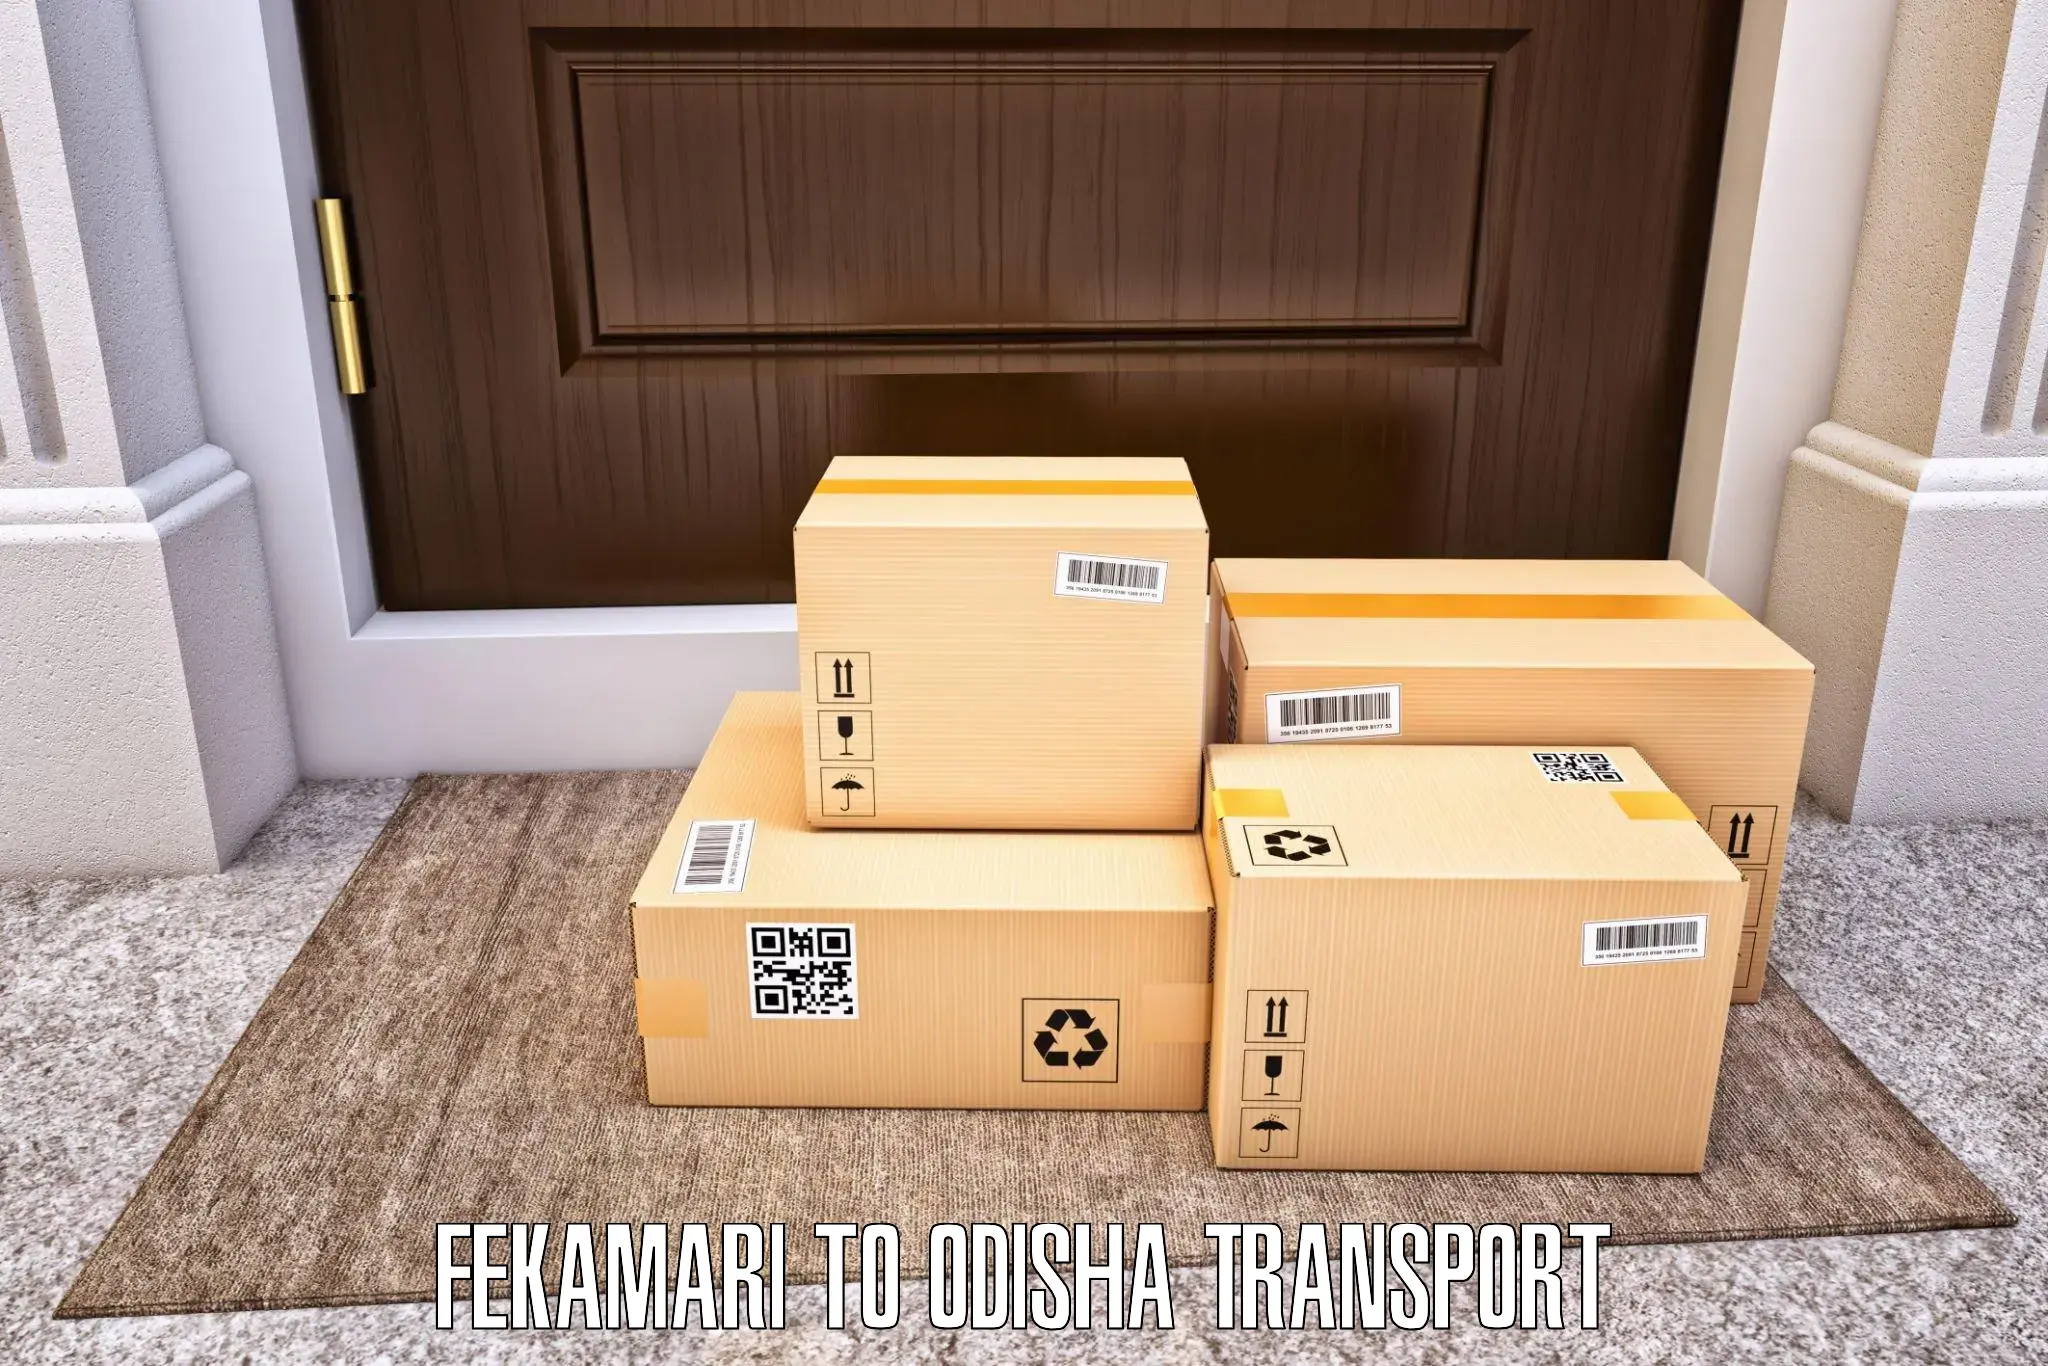 Cargo transportation services Fekamari to Odisha